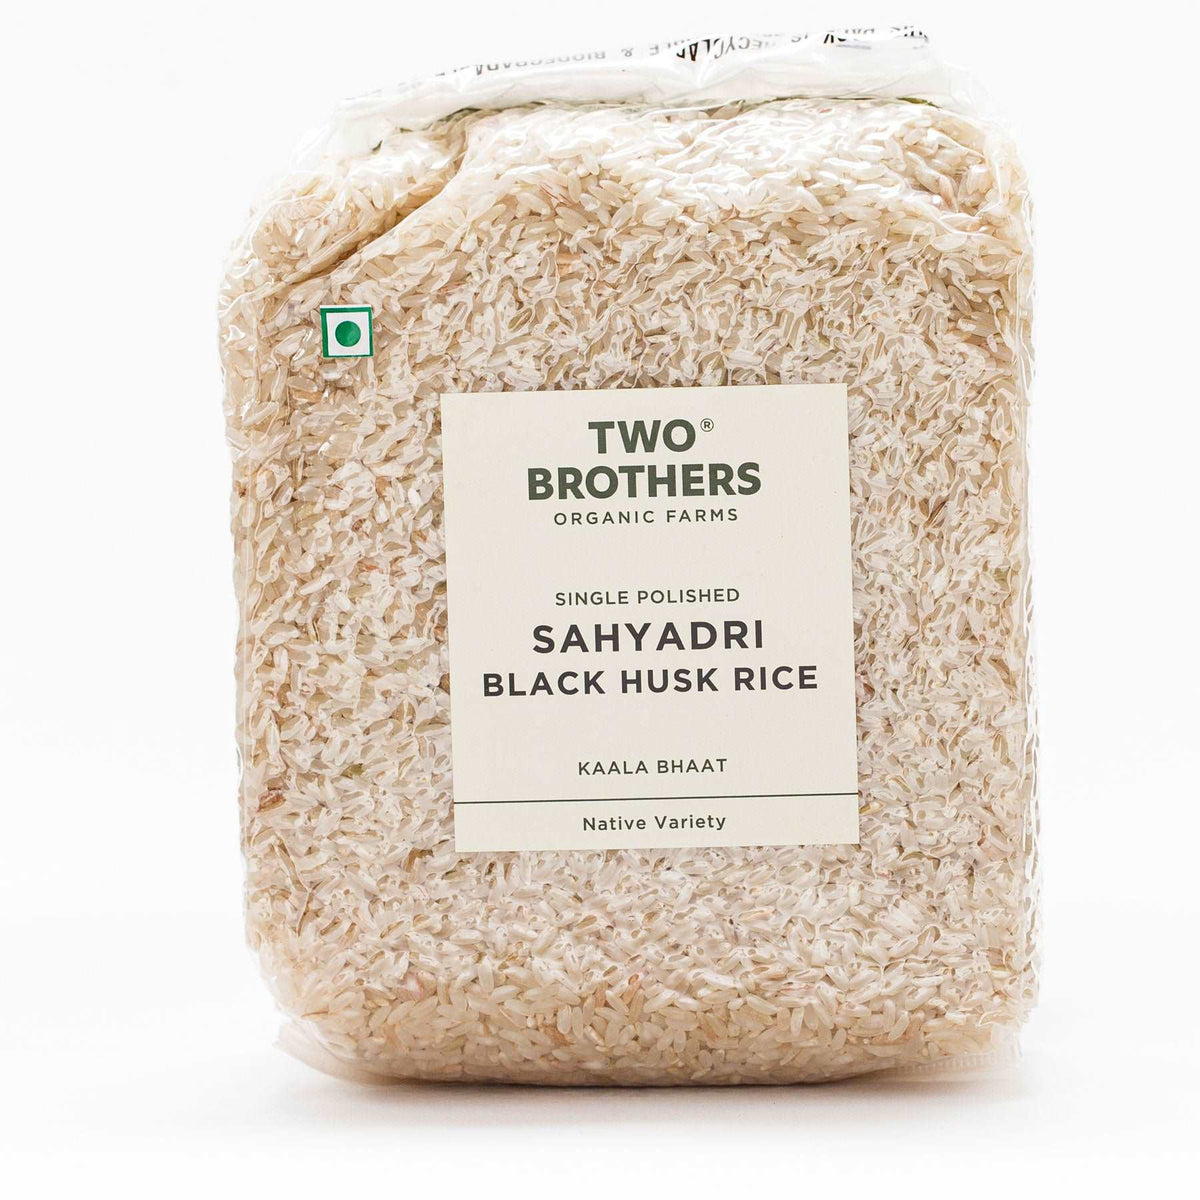 Sahyadri Black Husk Rice